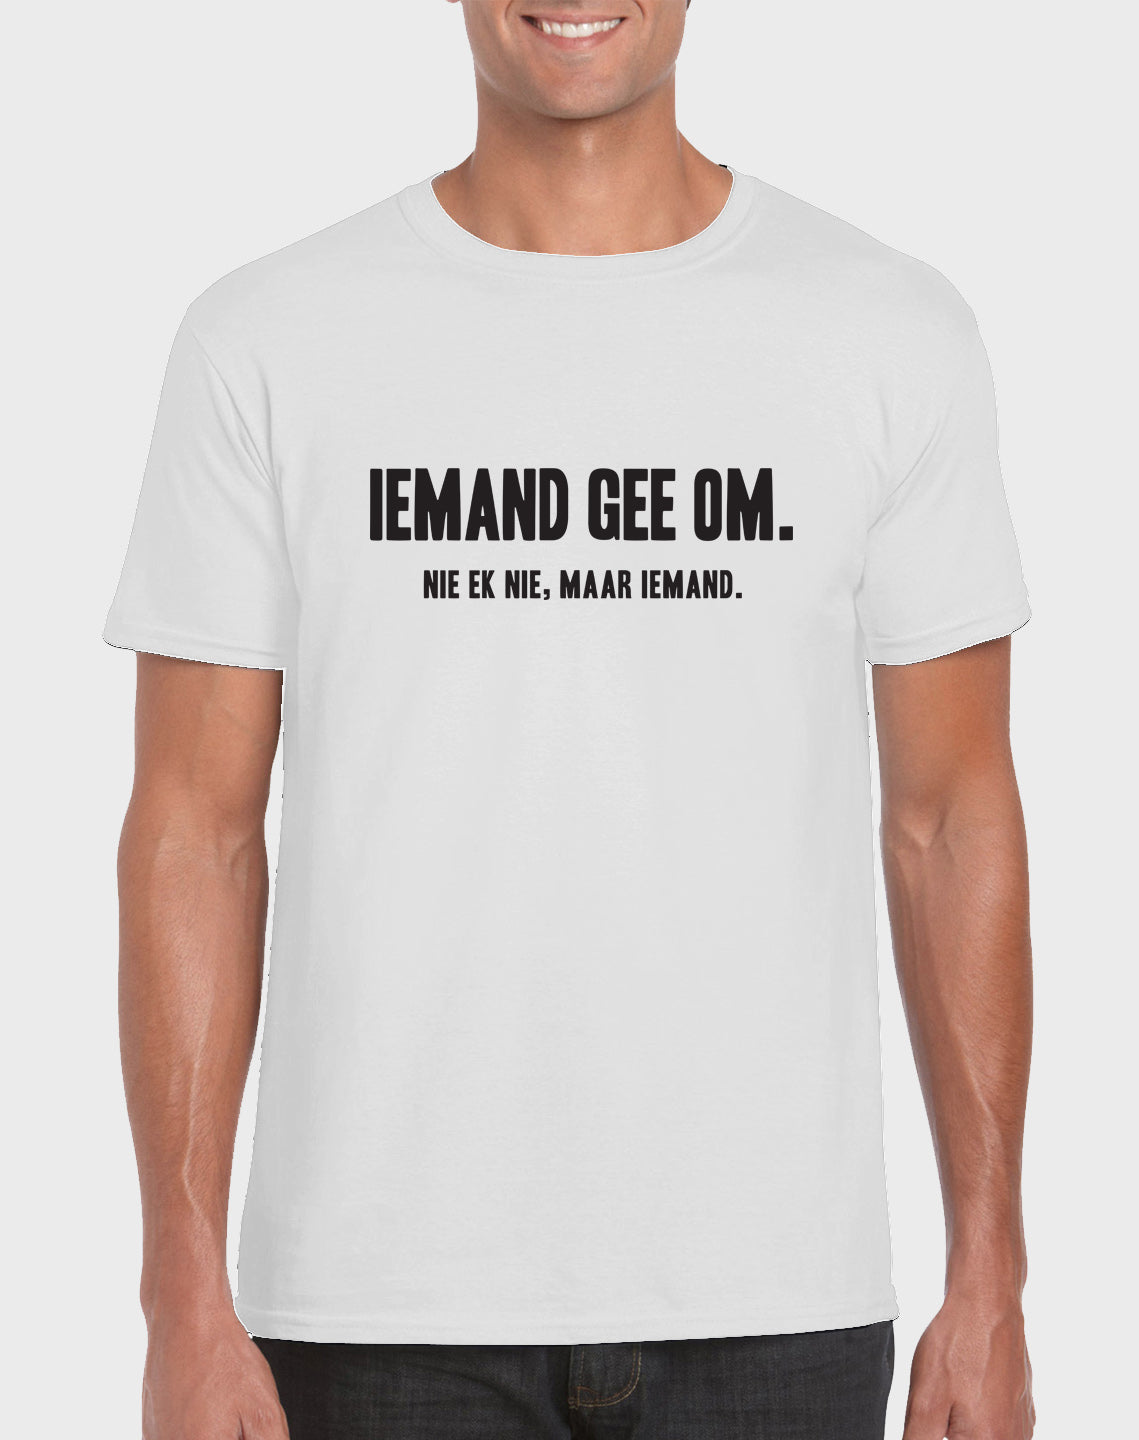 Afrilol Iemand gee om Men's T-shirt - komedie